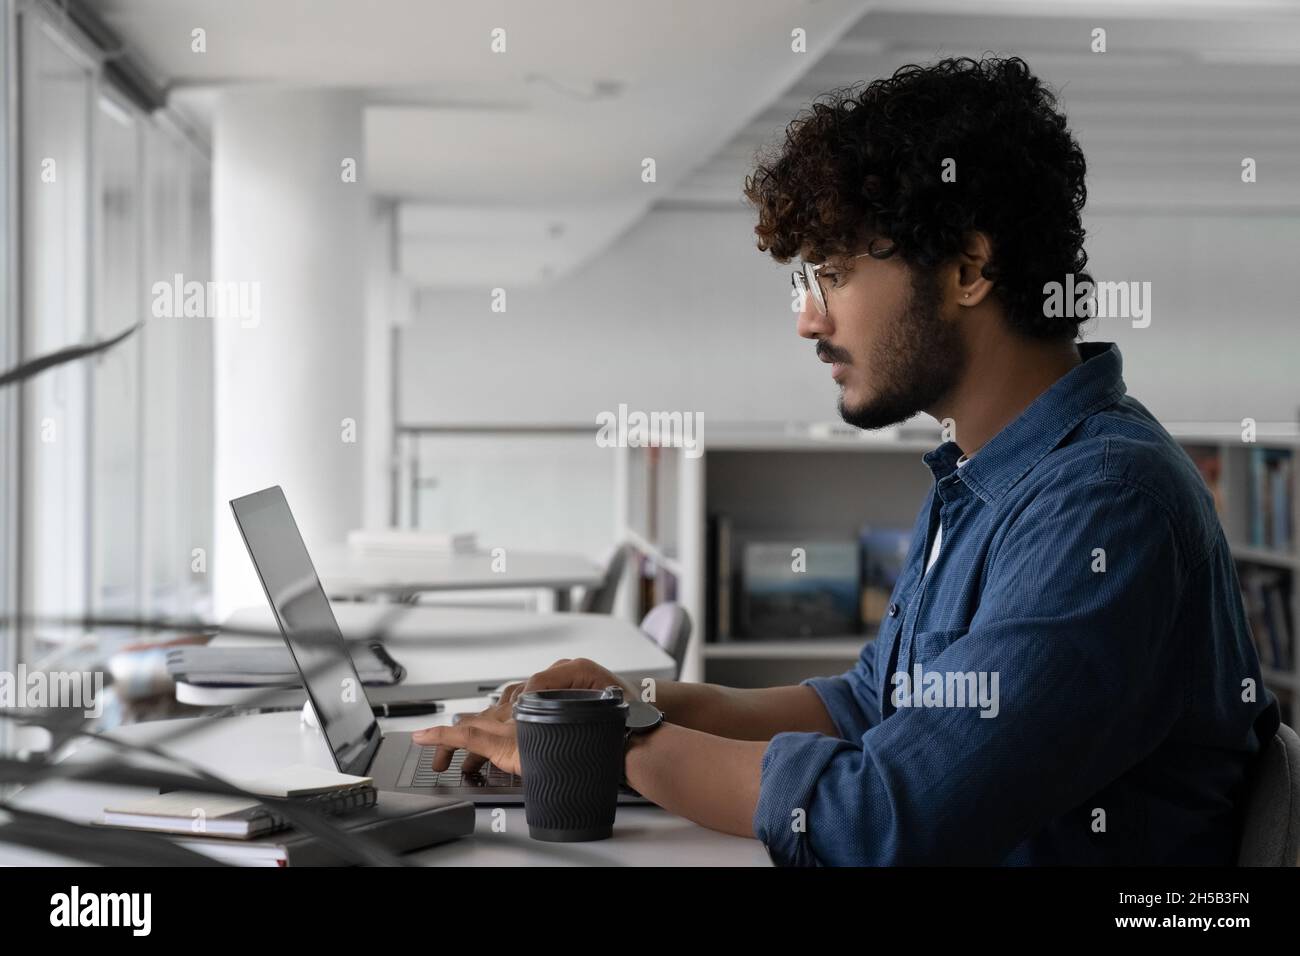 Un créateur indien travaillant sur un projet utilisant un ordinateur portable dans un espace de travail commun Banque D'Images